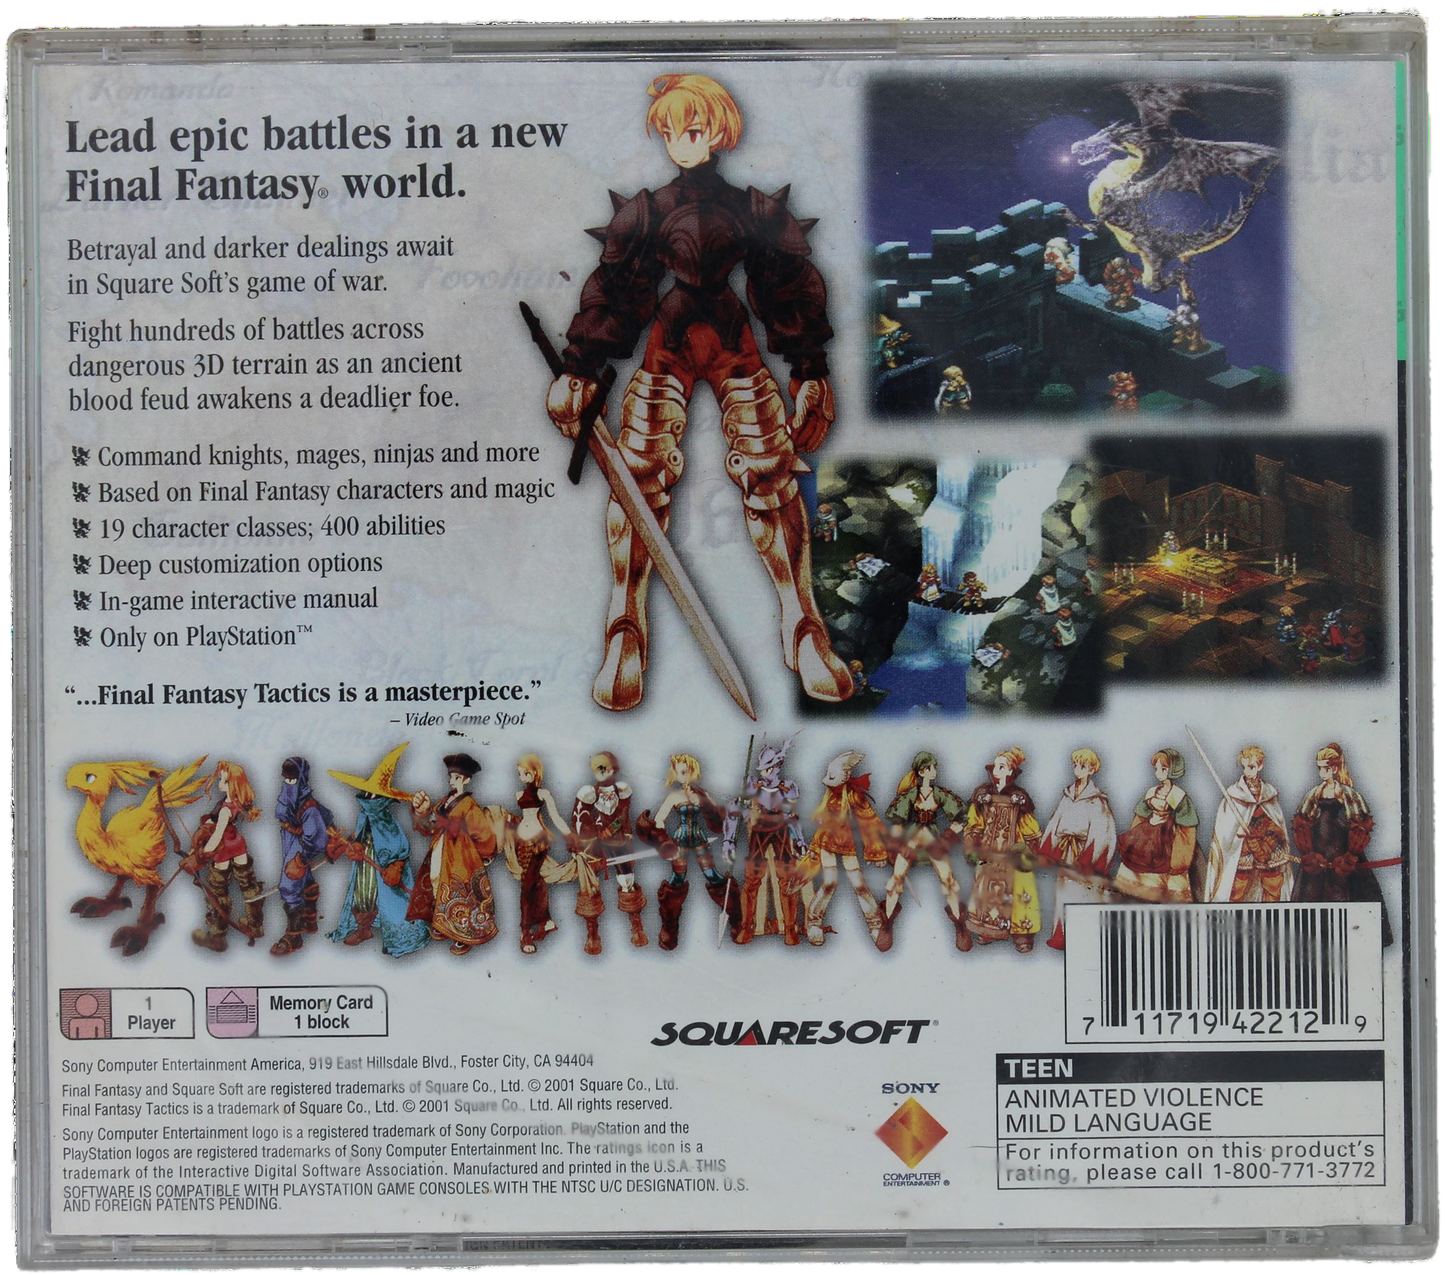 Final Fantasy Tactics [Greatest Hits] (PS1)